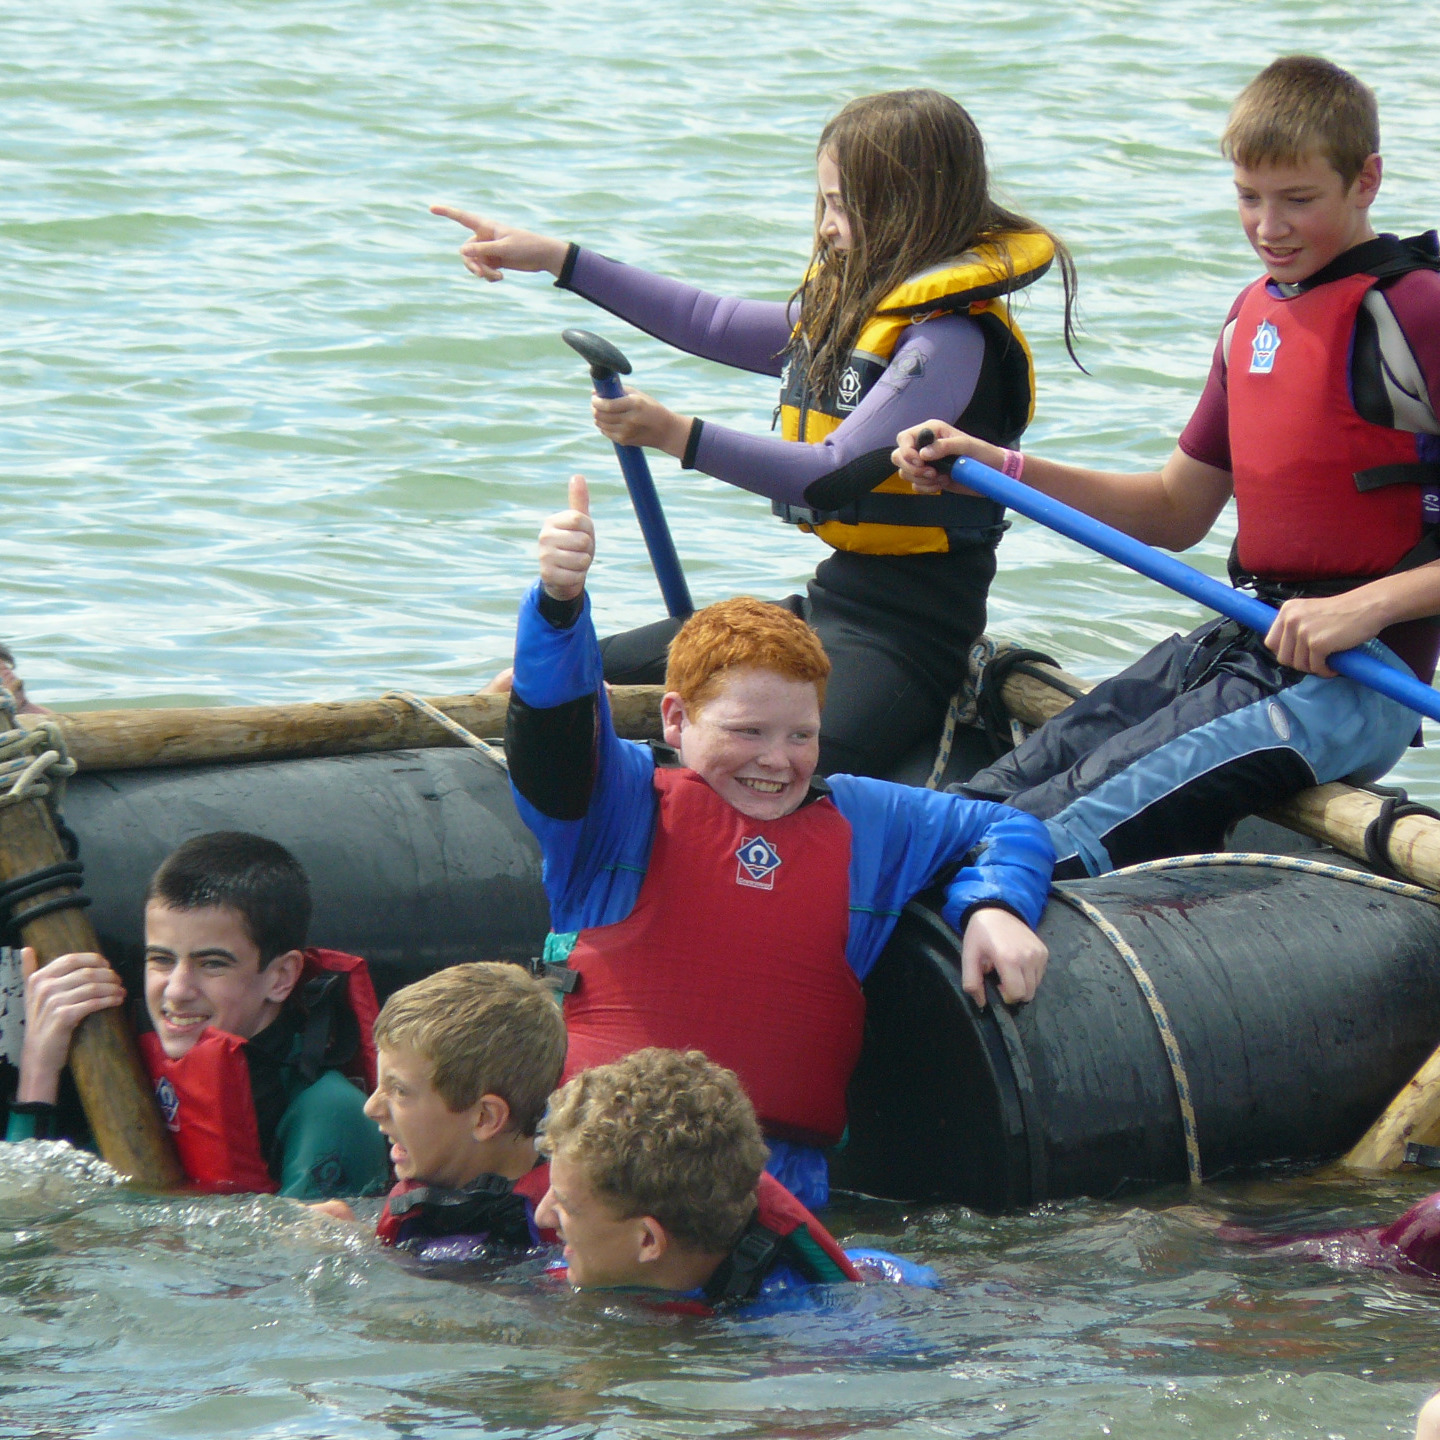 Group of children enjoying some water fun